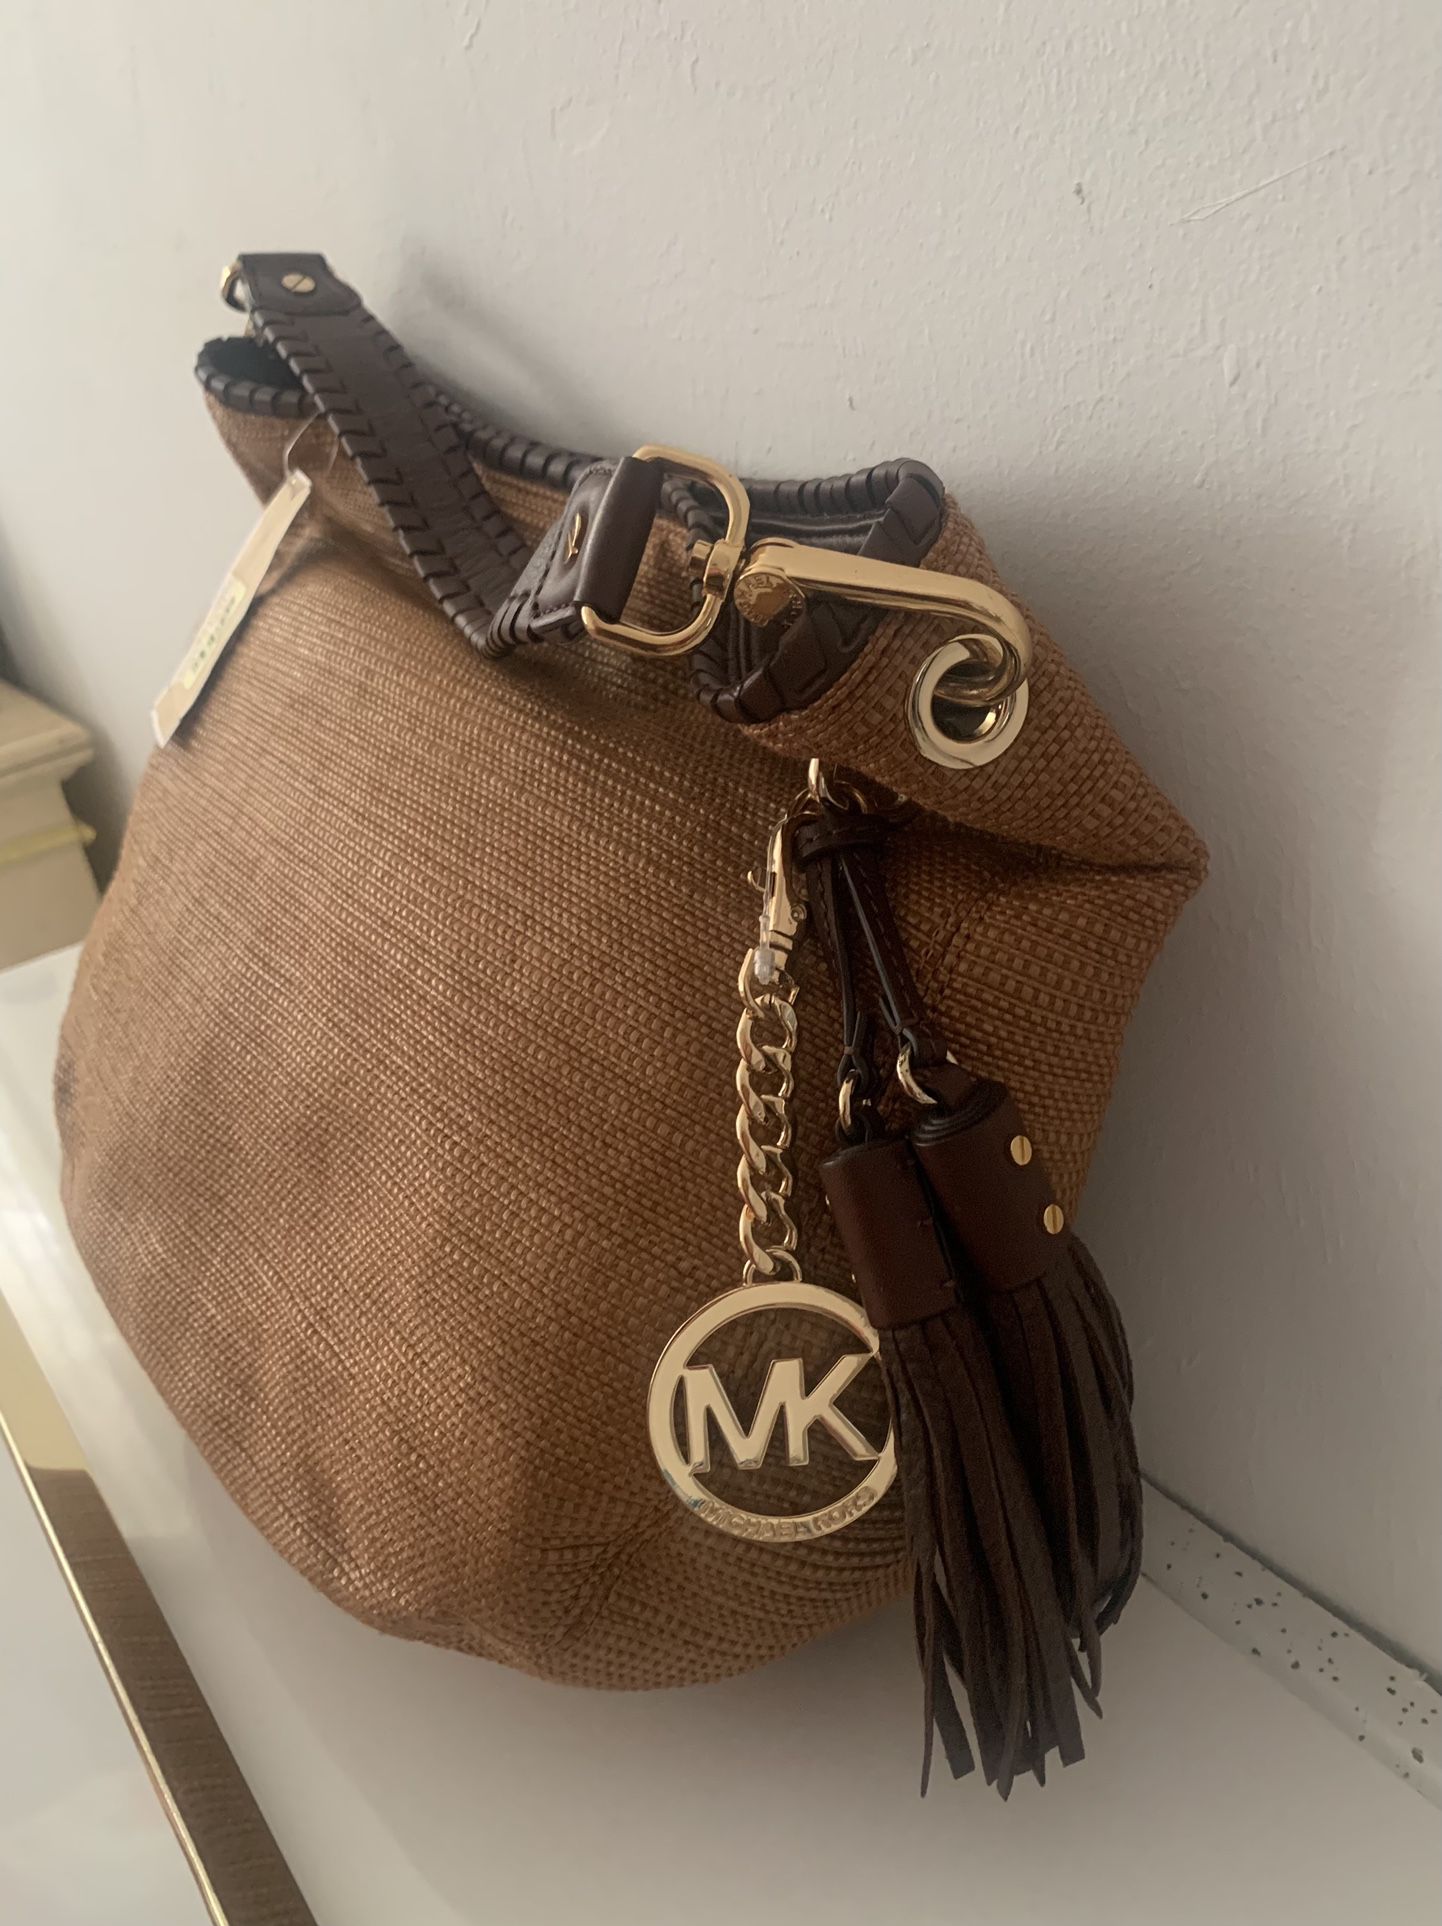 New Michael Kors bag Bennet Soft Straw Brown purse